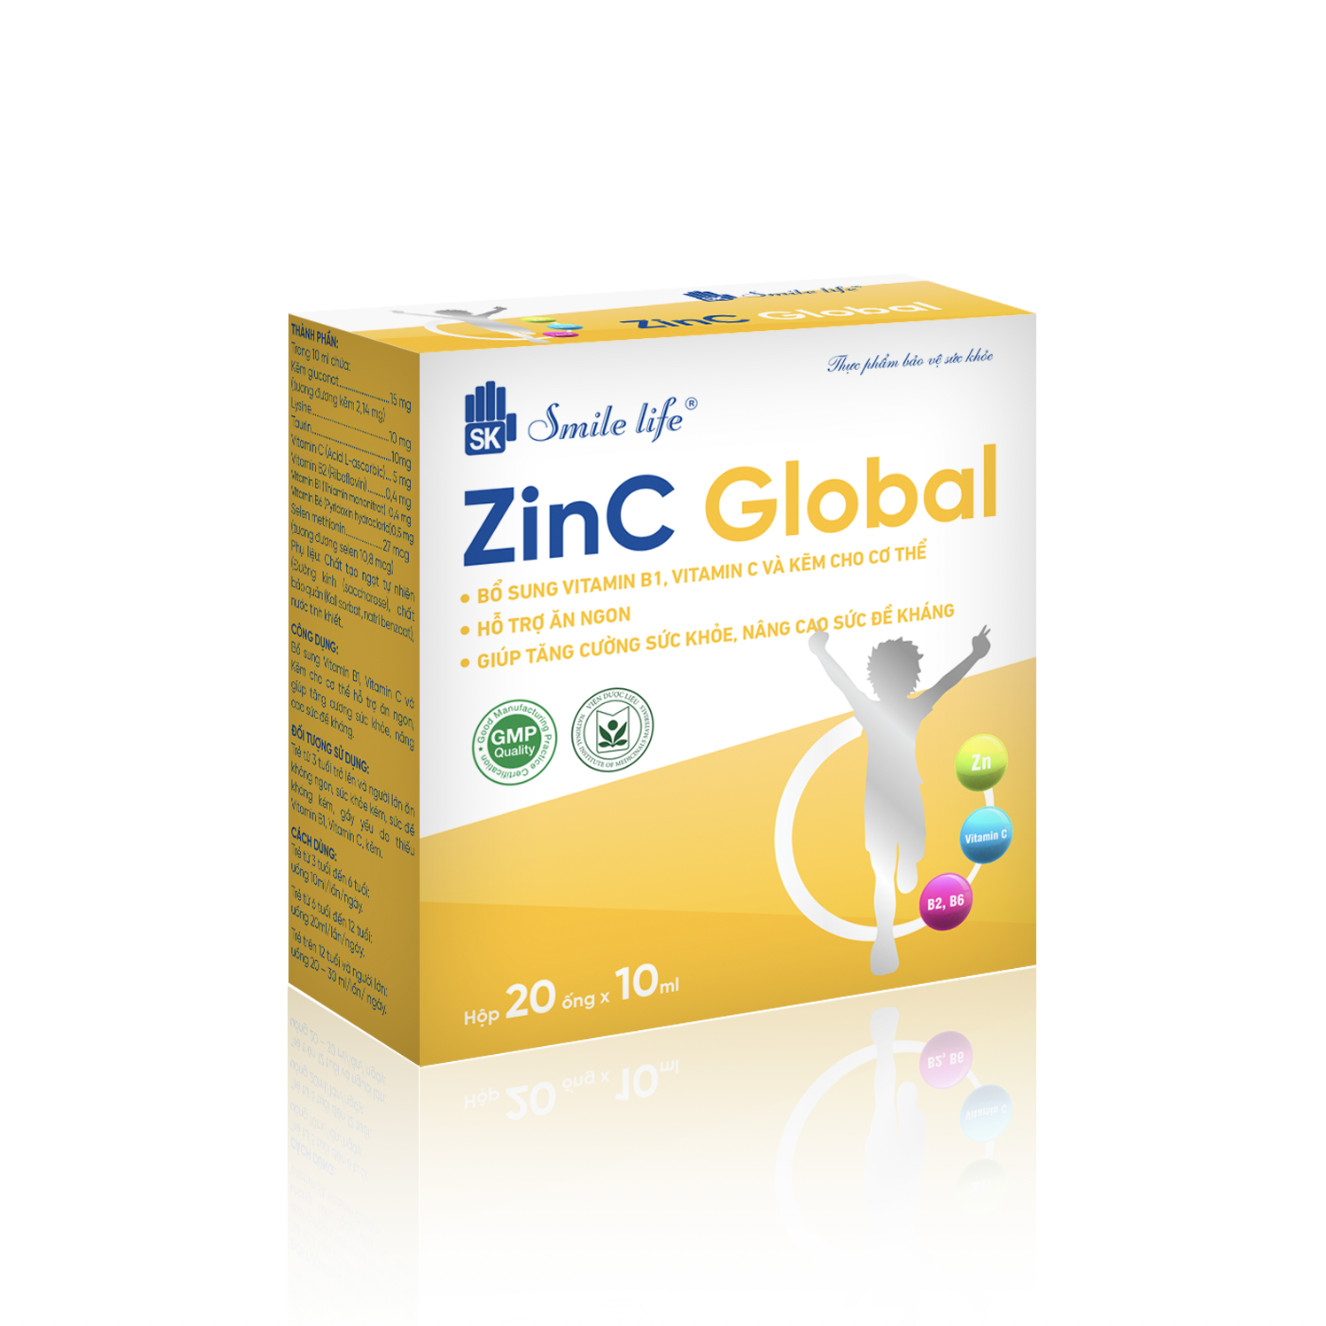 Sản phẩm Zinc Global